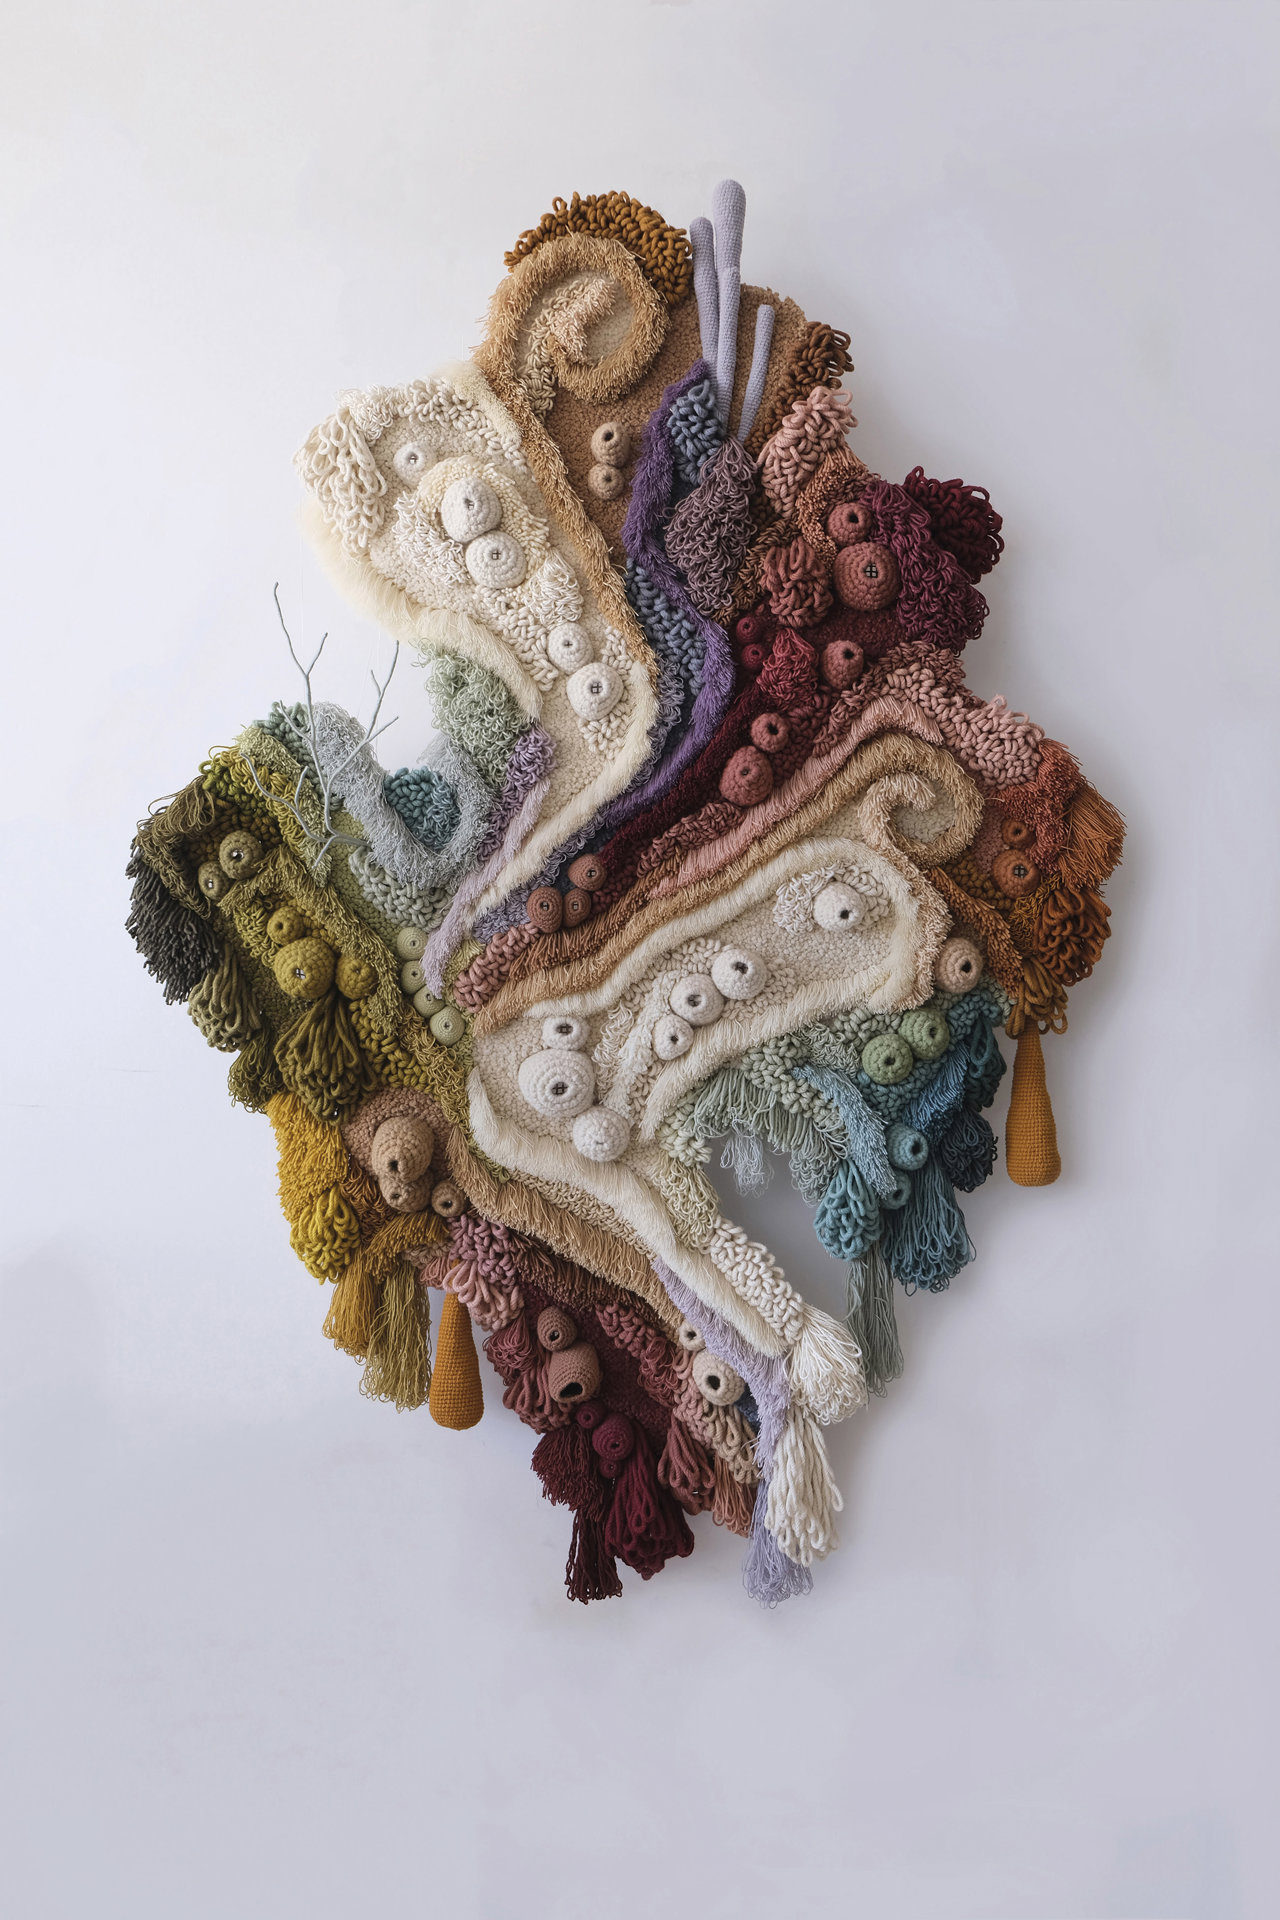 En piezas como 'Living Coral Series' (2021) o 'Picos' se emplean una media de 10 kg de desechos textiles, una cifra que en algunos casos se ha cuadriplicado, como en su monumental obra 'World Map' 